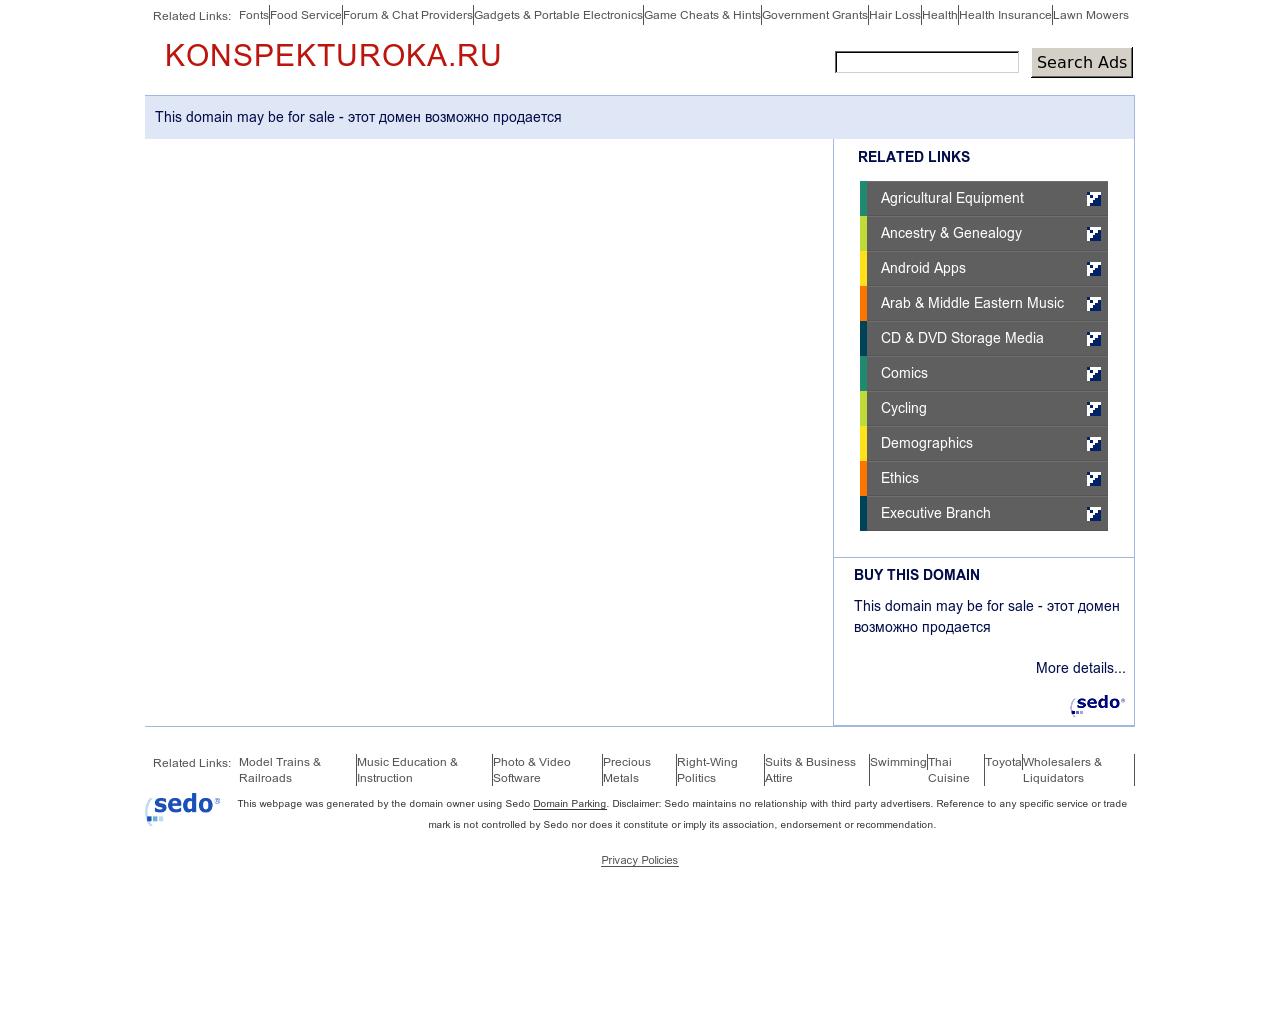 Изображение сайта konspekturoka.ru в разрешении 1280x1024